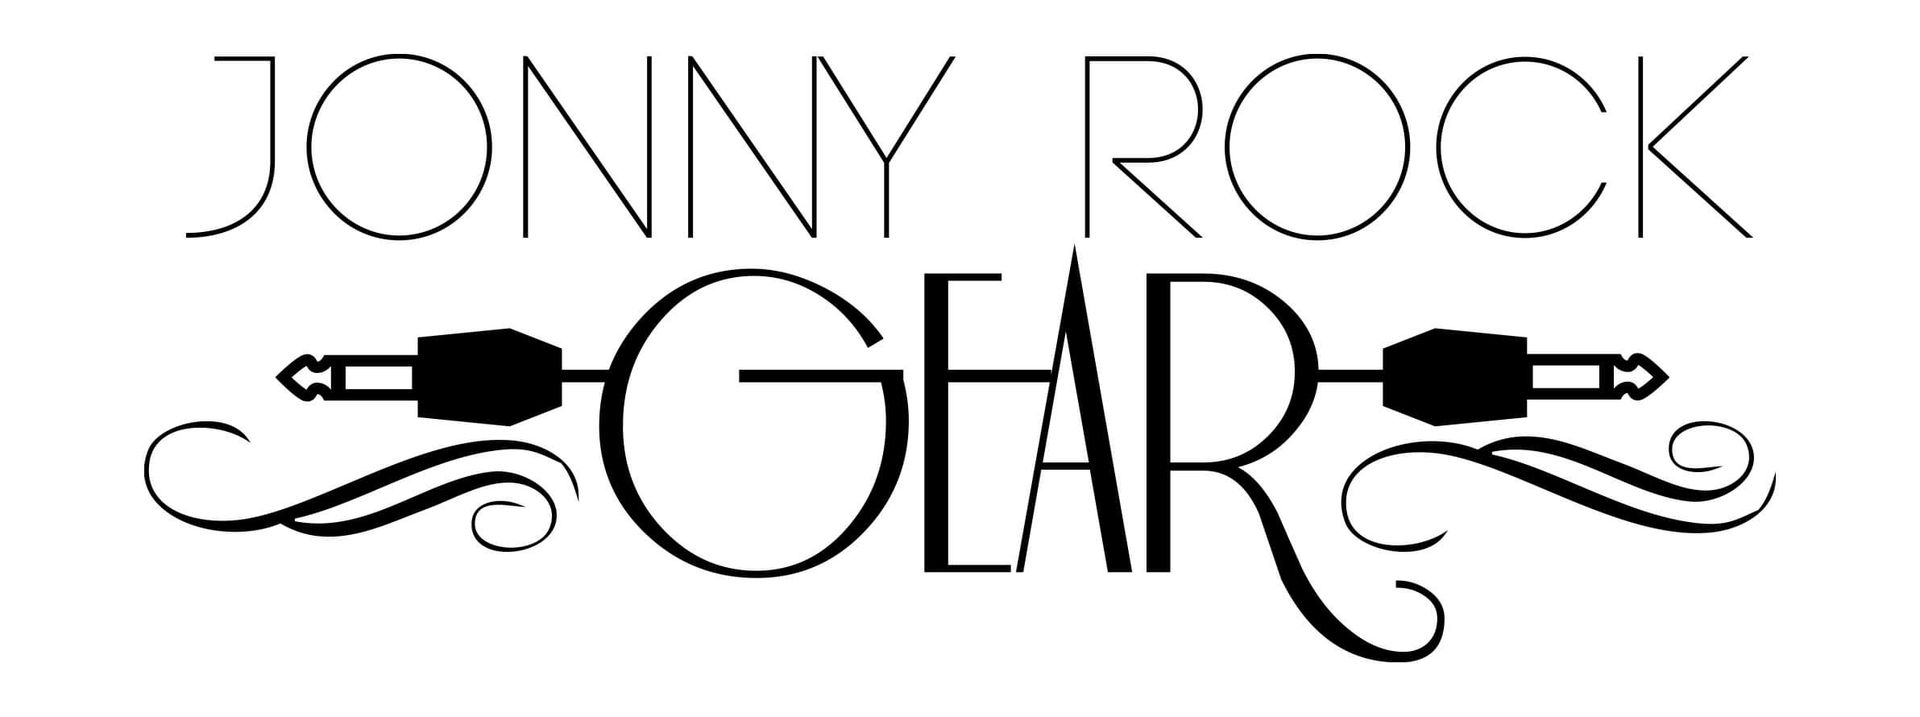 Jonny Rock Gear